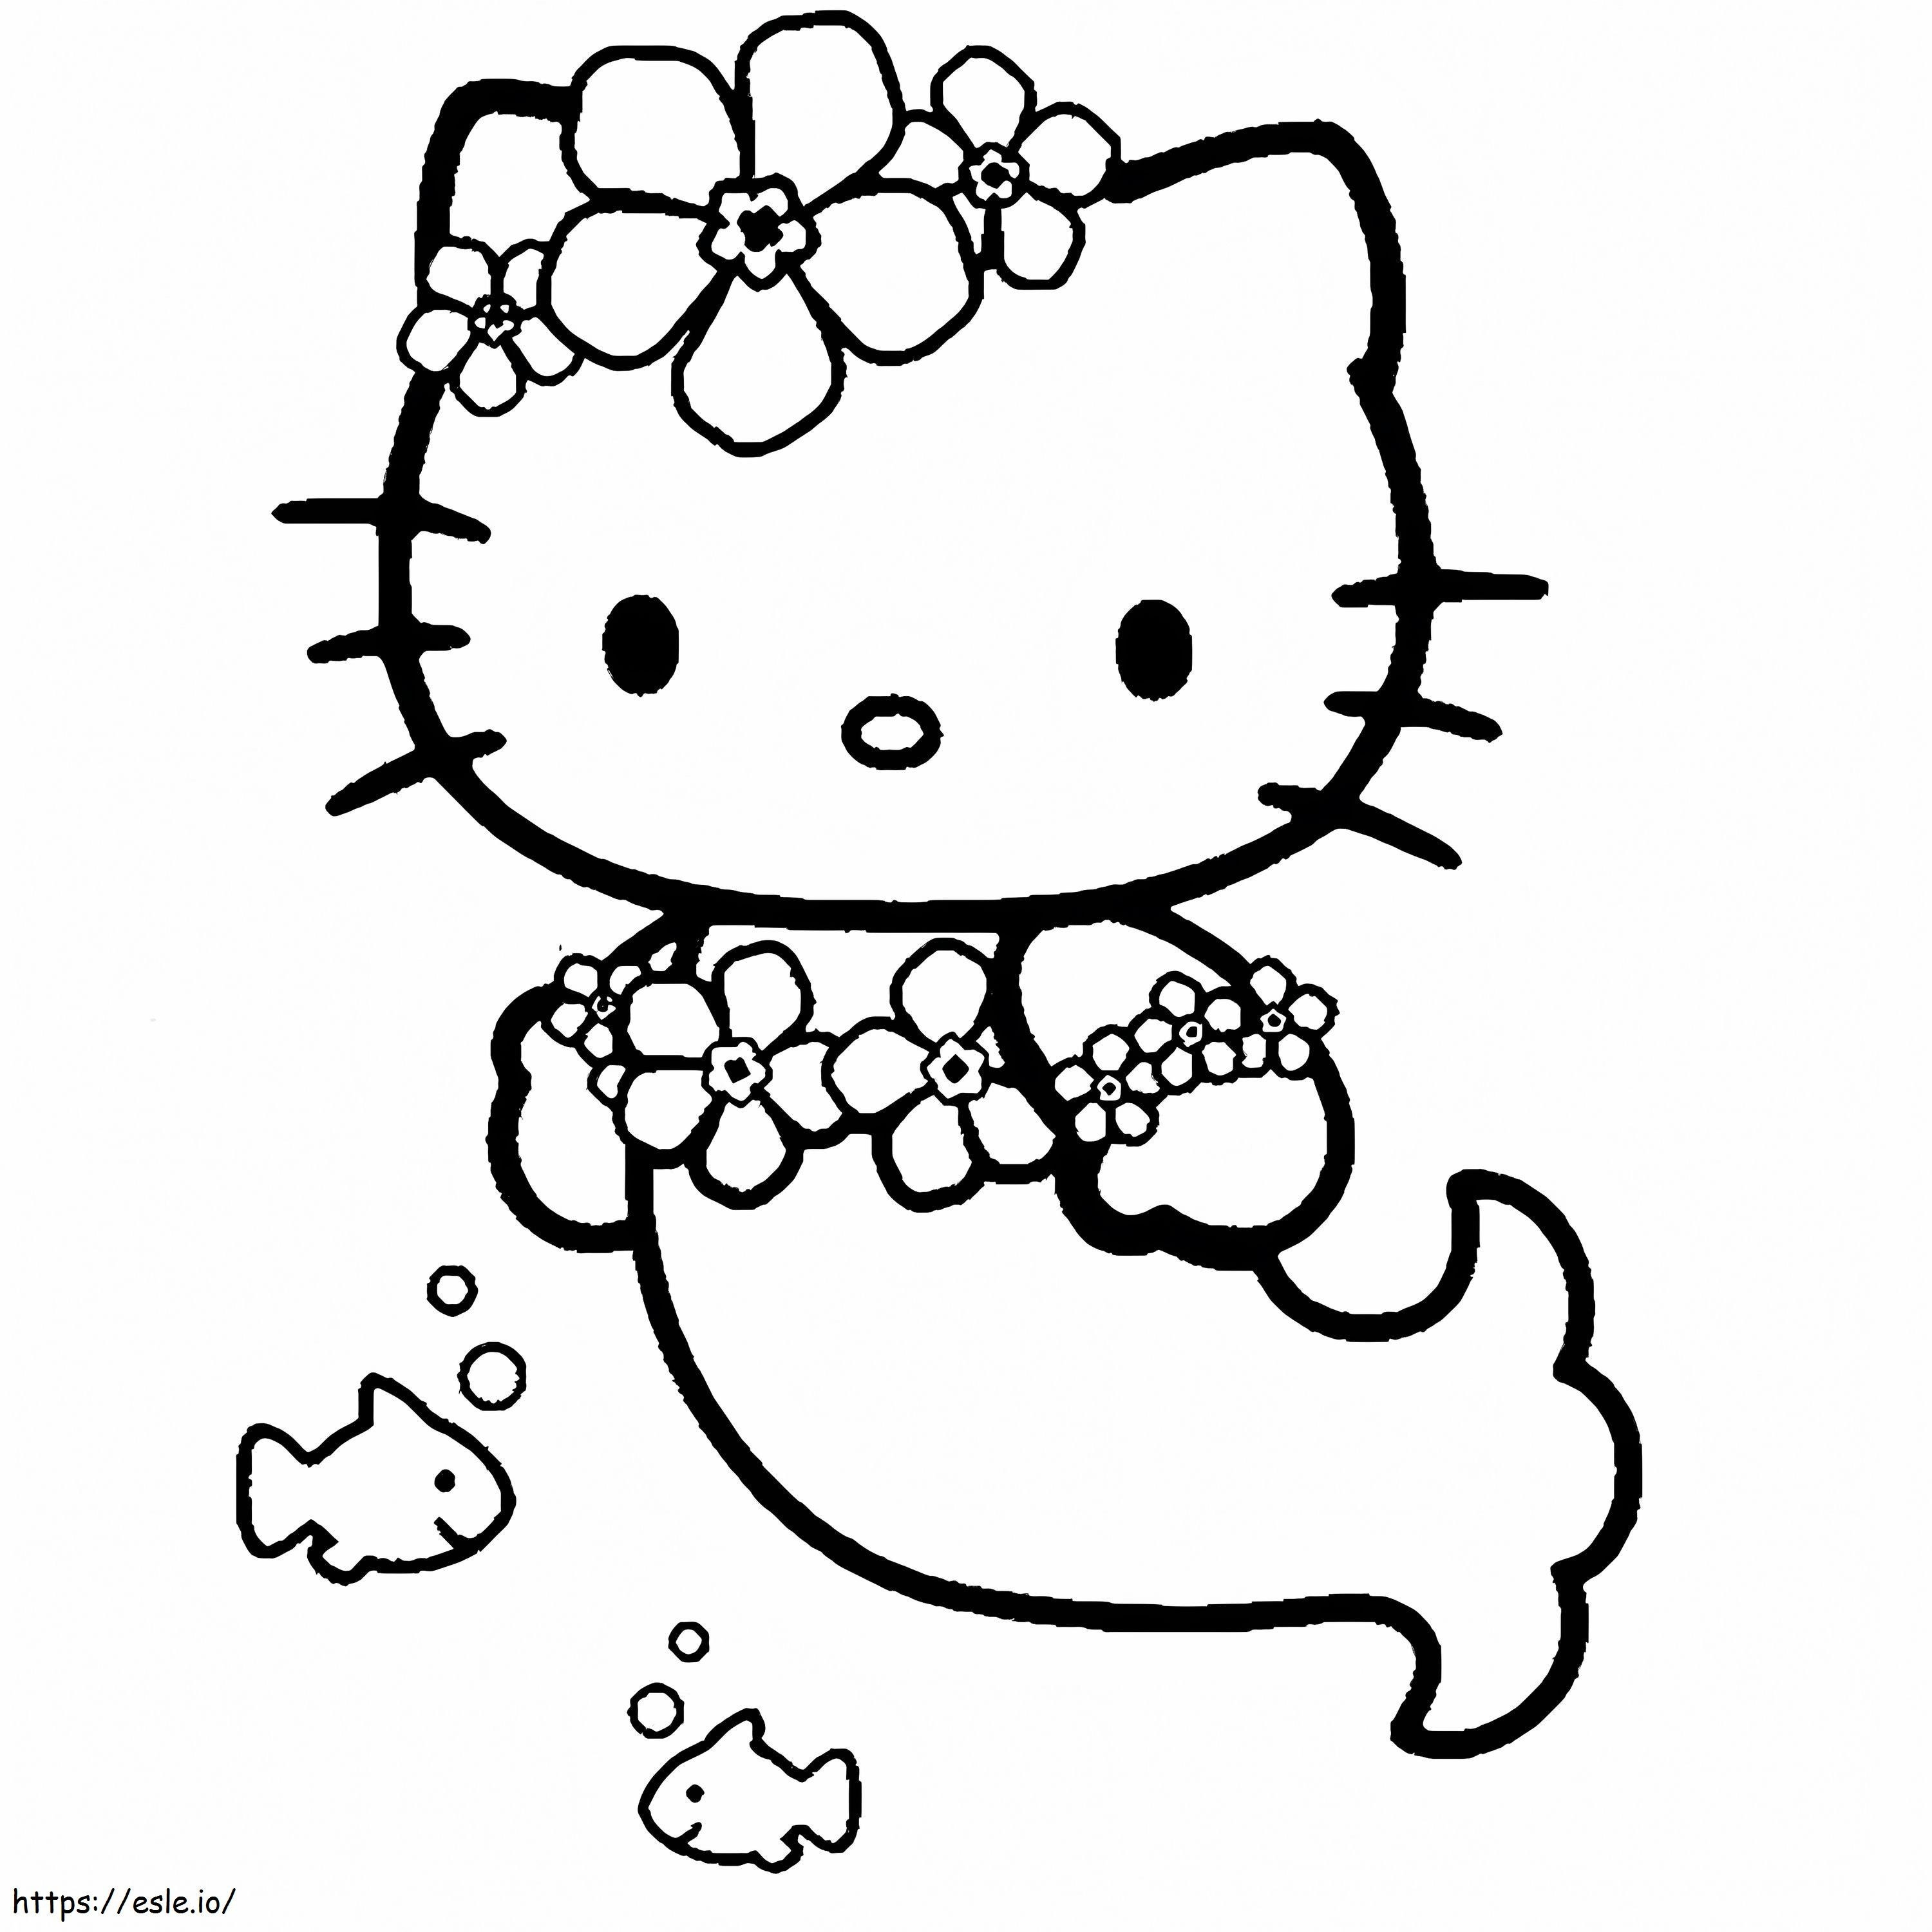 Putri Duyung Hello Kitty Gambar Mewarnai